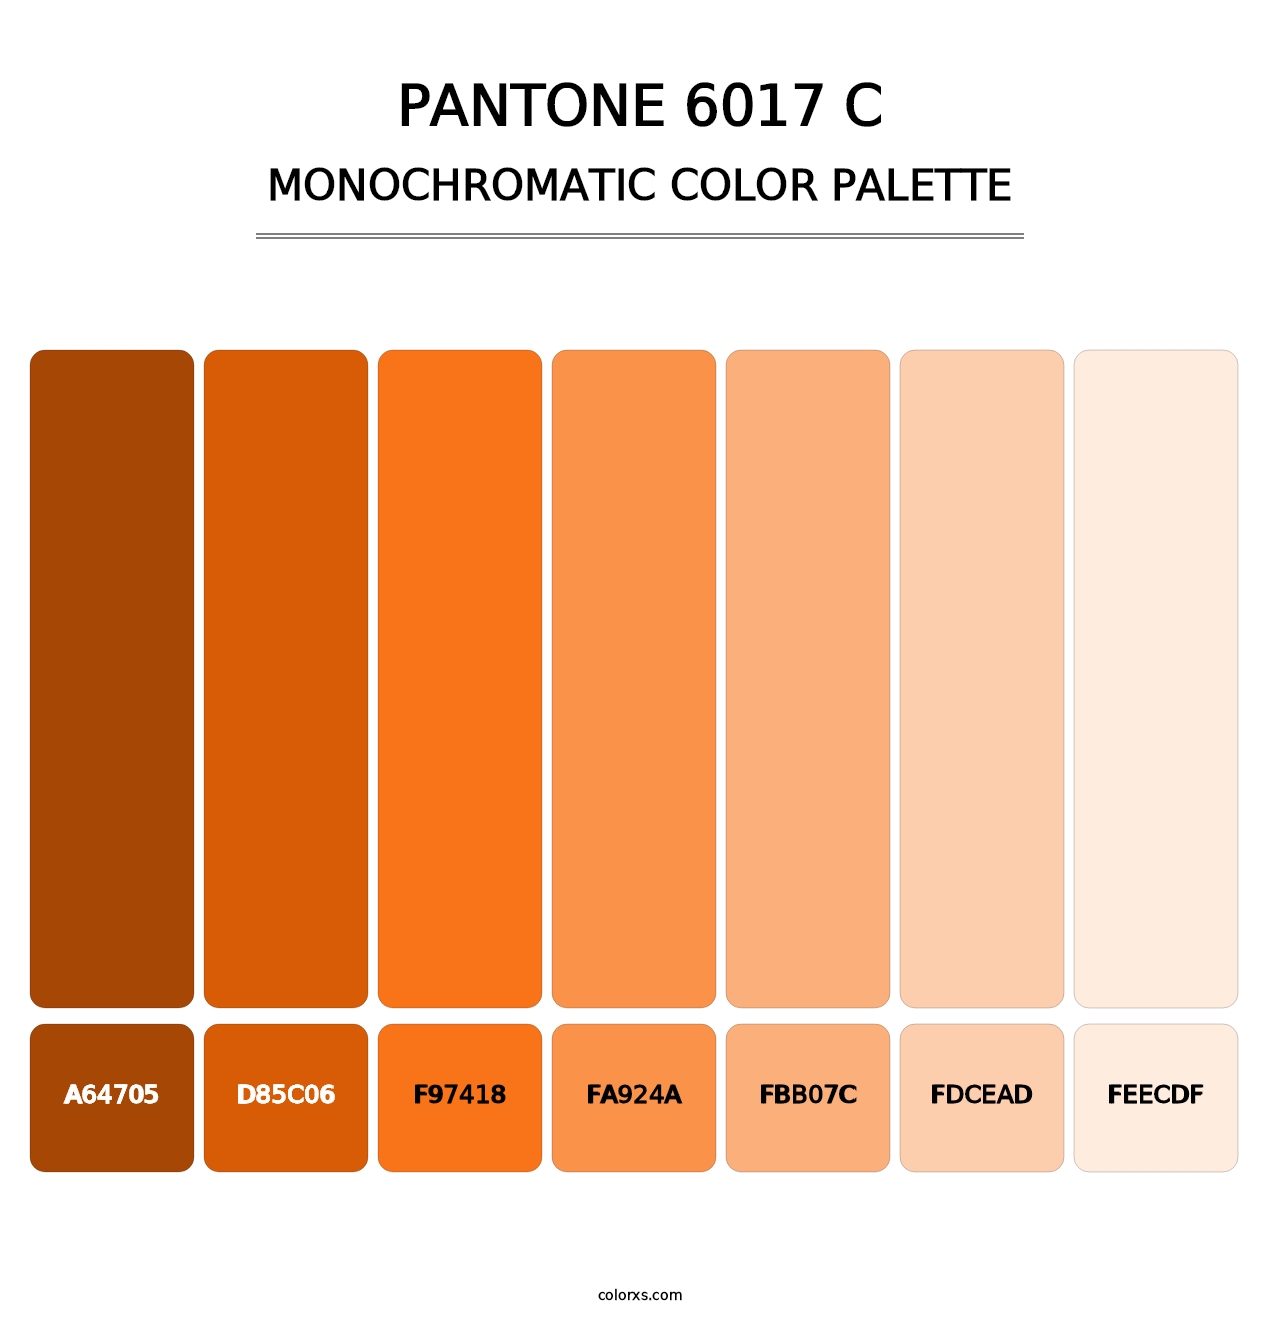 PANTONE 6017 C - Monochromatic Color Palette